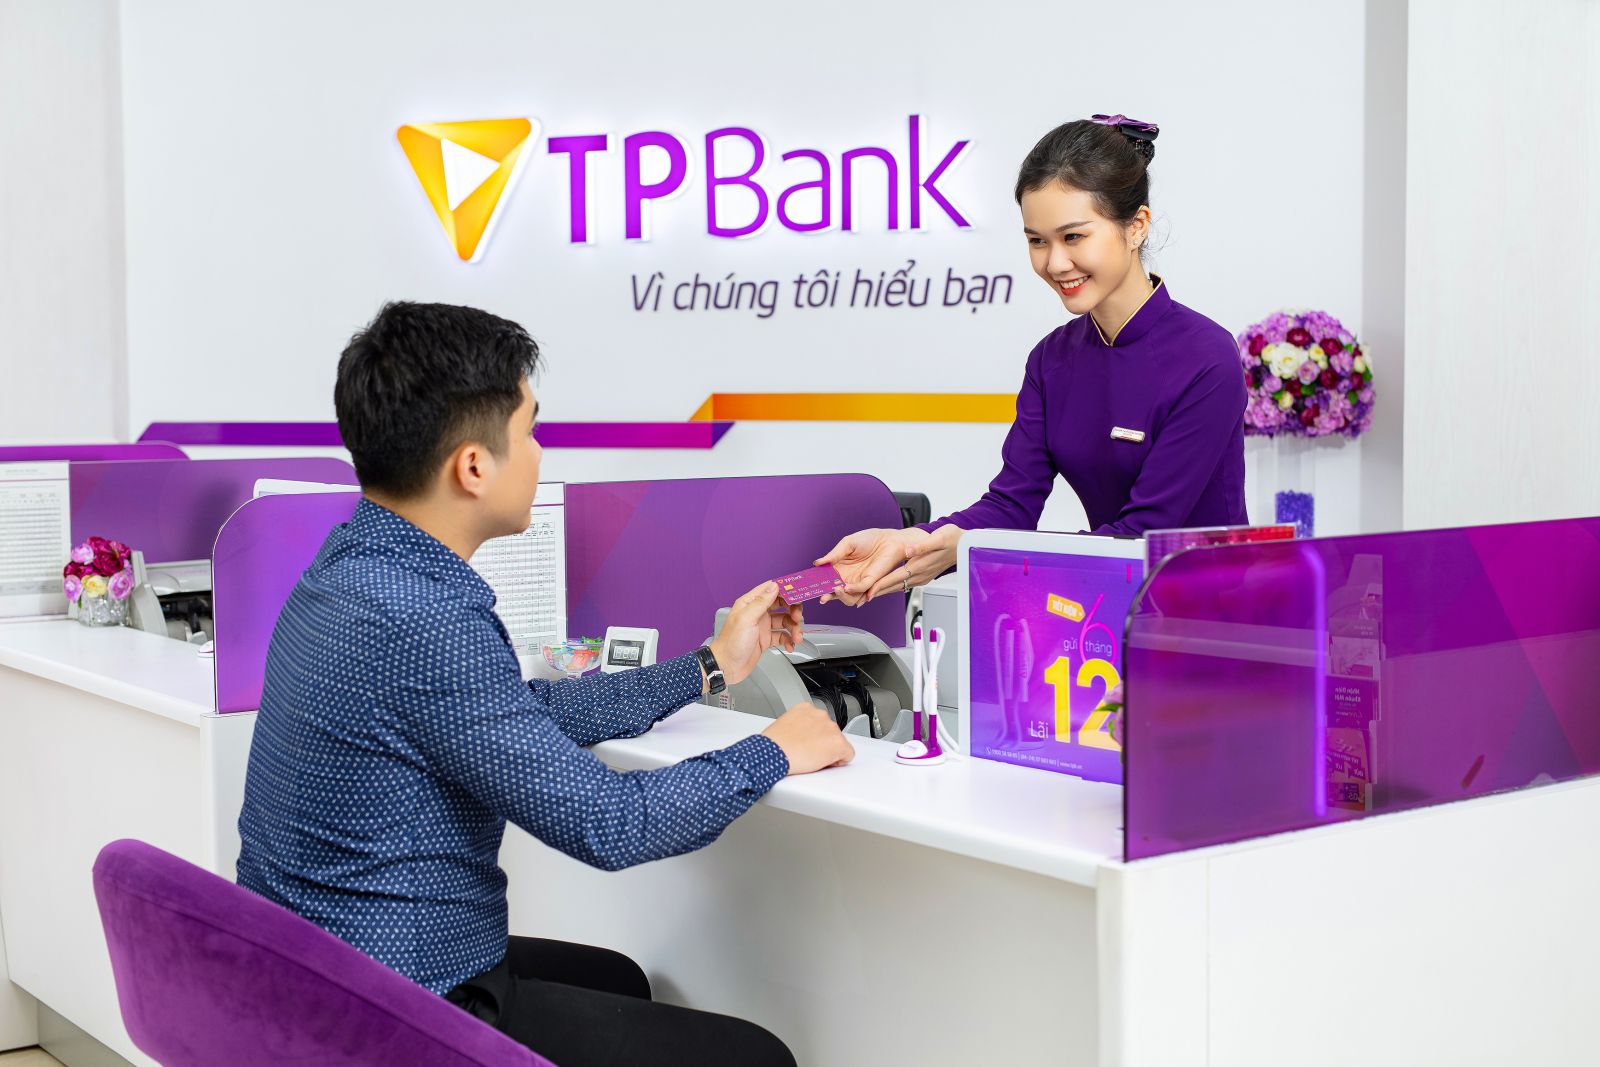 Hiện tại, TPBank đang triển khai nhiều gói ưu đãi với mức lãi suất hấp dẫn cho khách hàng.